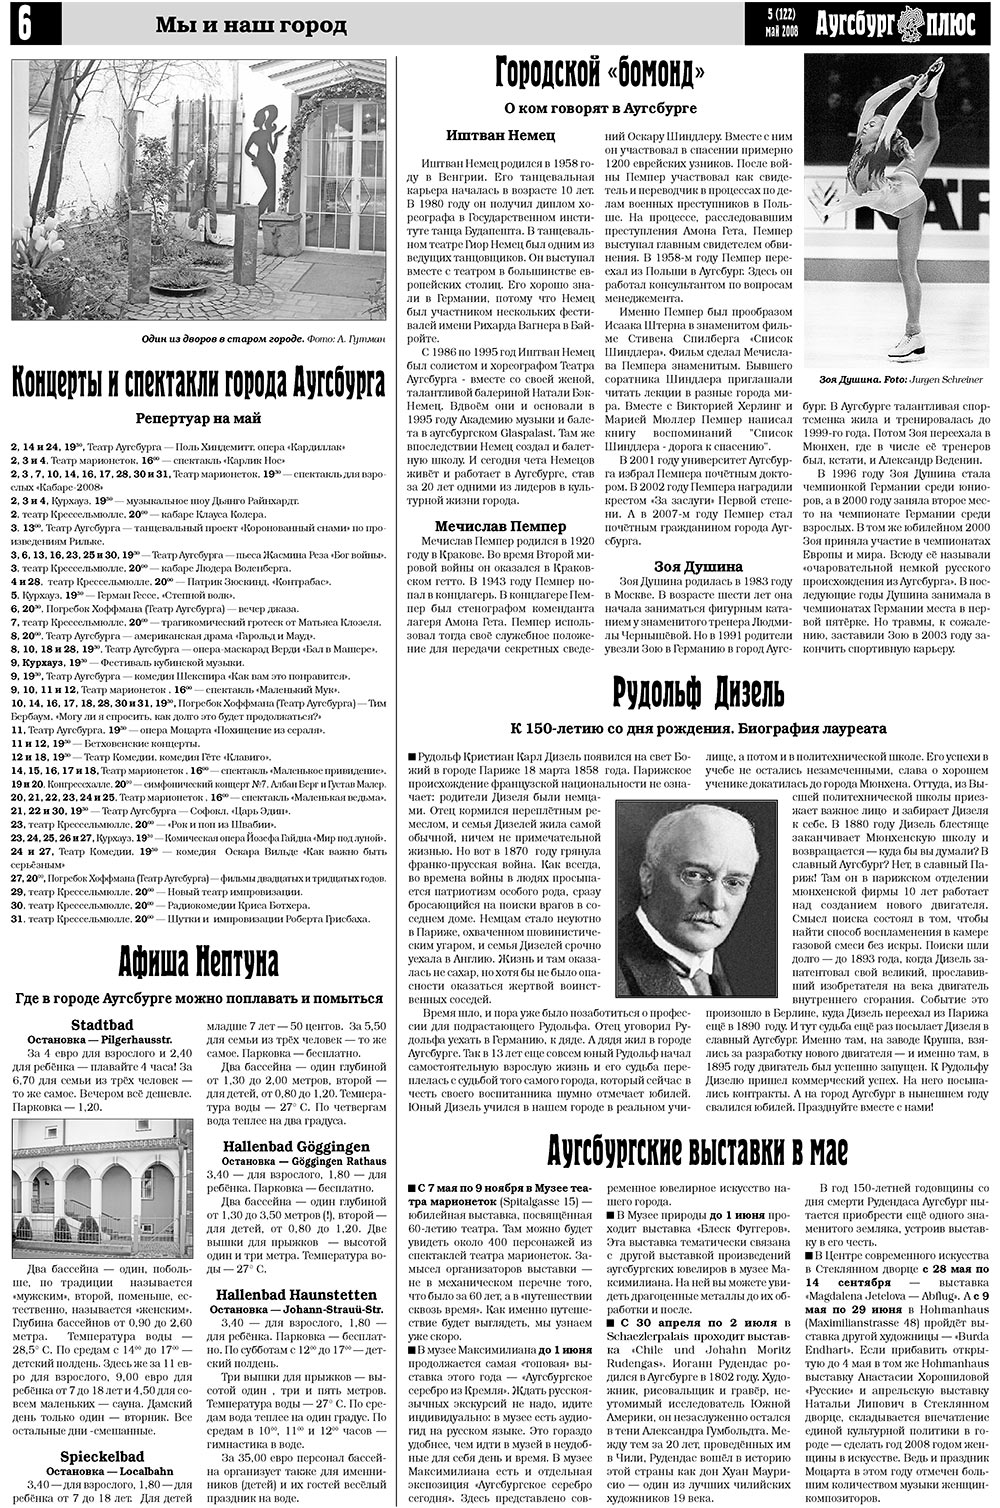 Германия плюс (газета). 2008 год, номер 5, стр. 8